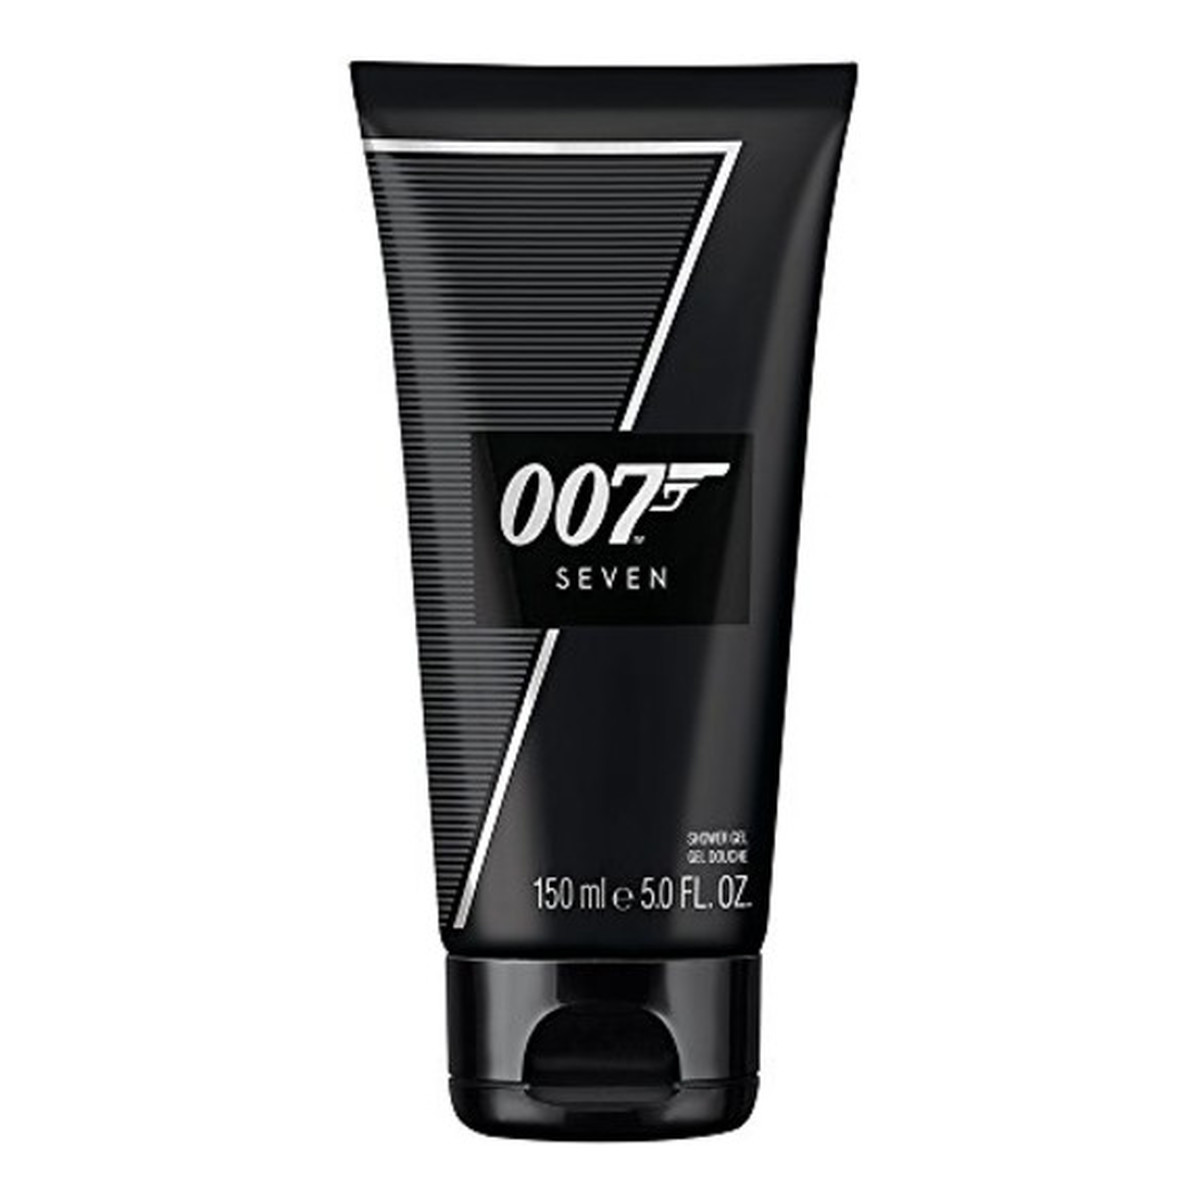 James Bond 007 Seven Żel pod prysznic 150ml